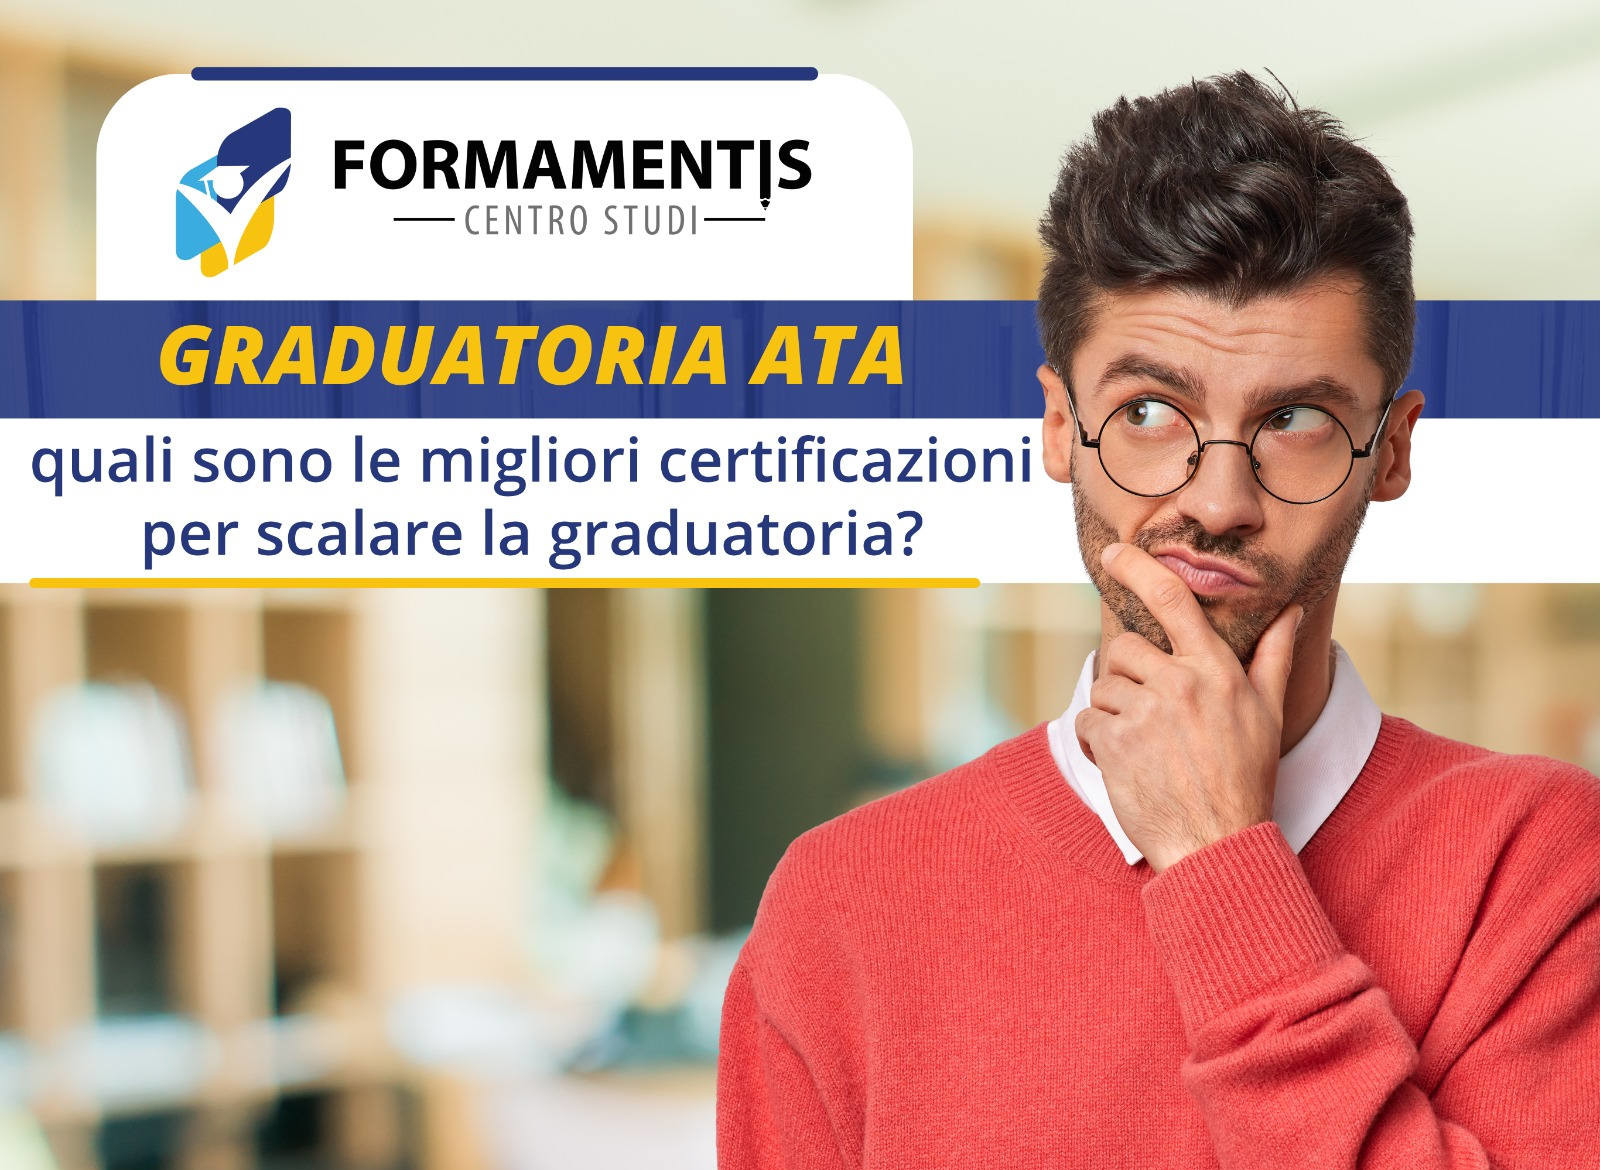 Personale ATA: quali sono le migliori certificazioni per scalare la graduatoria?